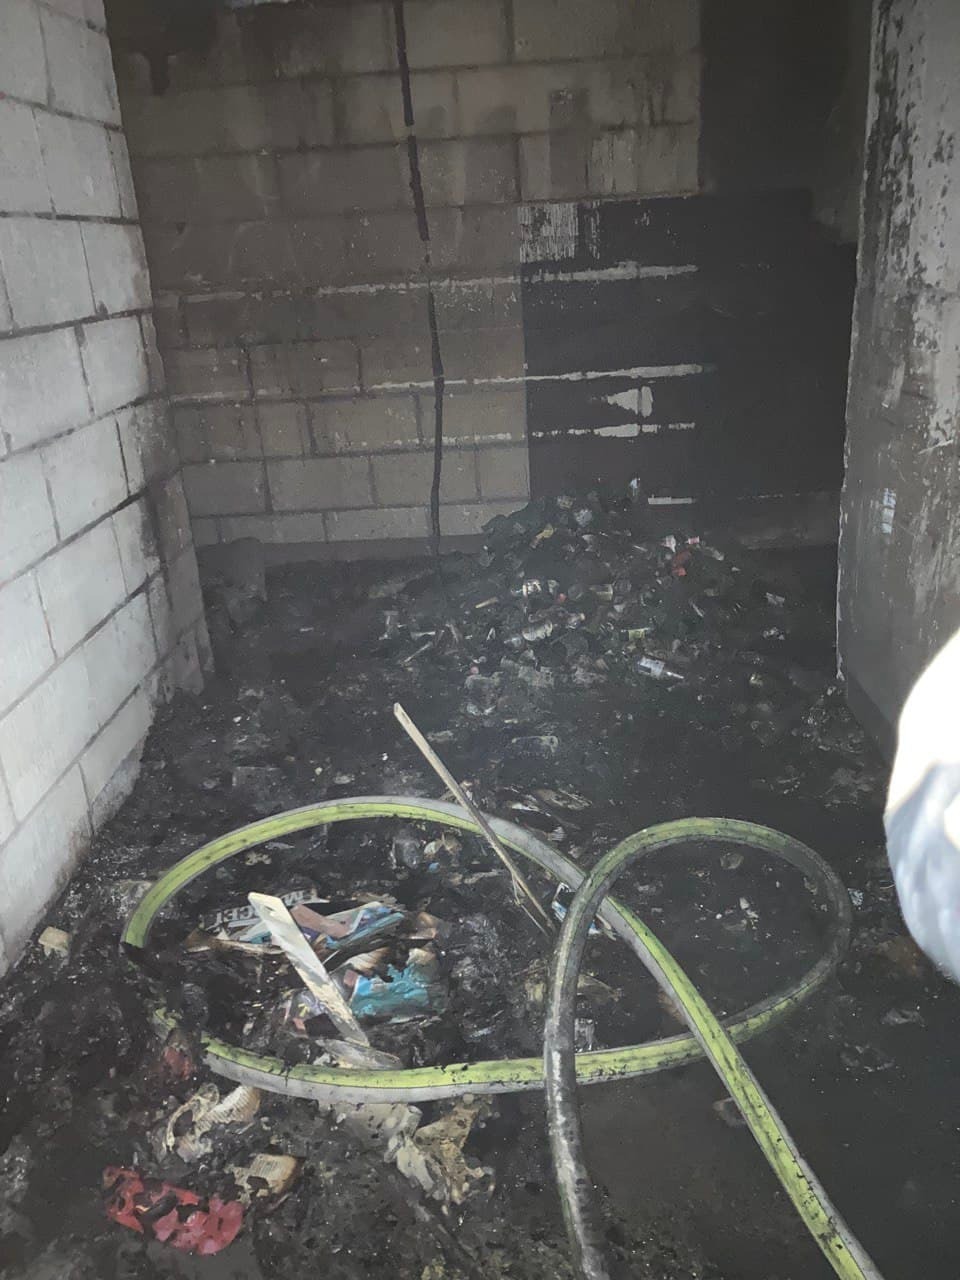 Feu de poubelles dans un local d'immeuble - Evere (Bruxelles) - 15/11/2021 Whats295